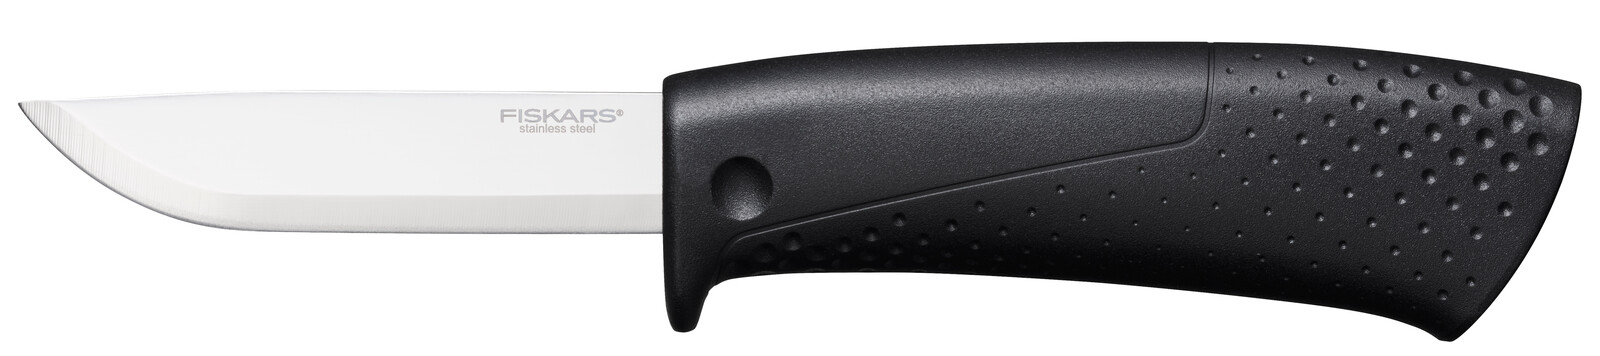 Цена нож нескладной Fiskars 1023617 в Житомире